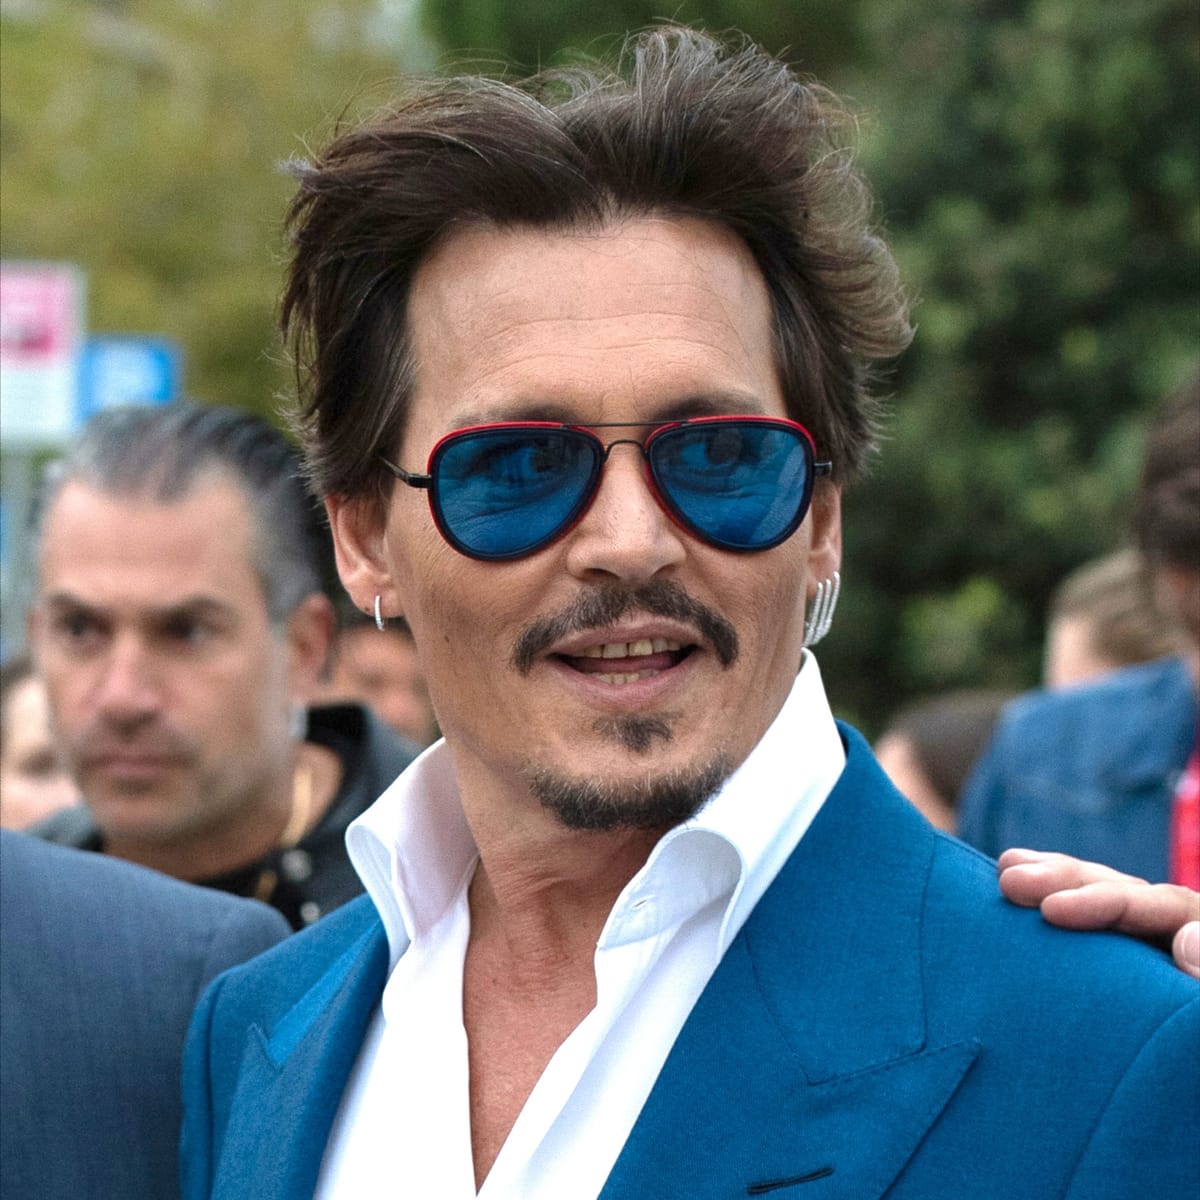 Some fans believe Johnny Depp